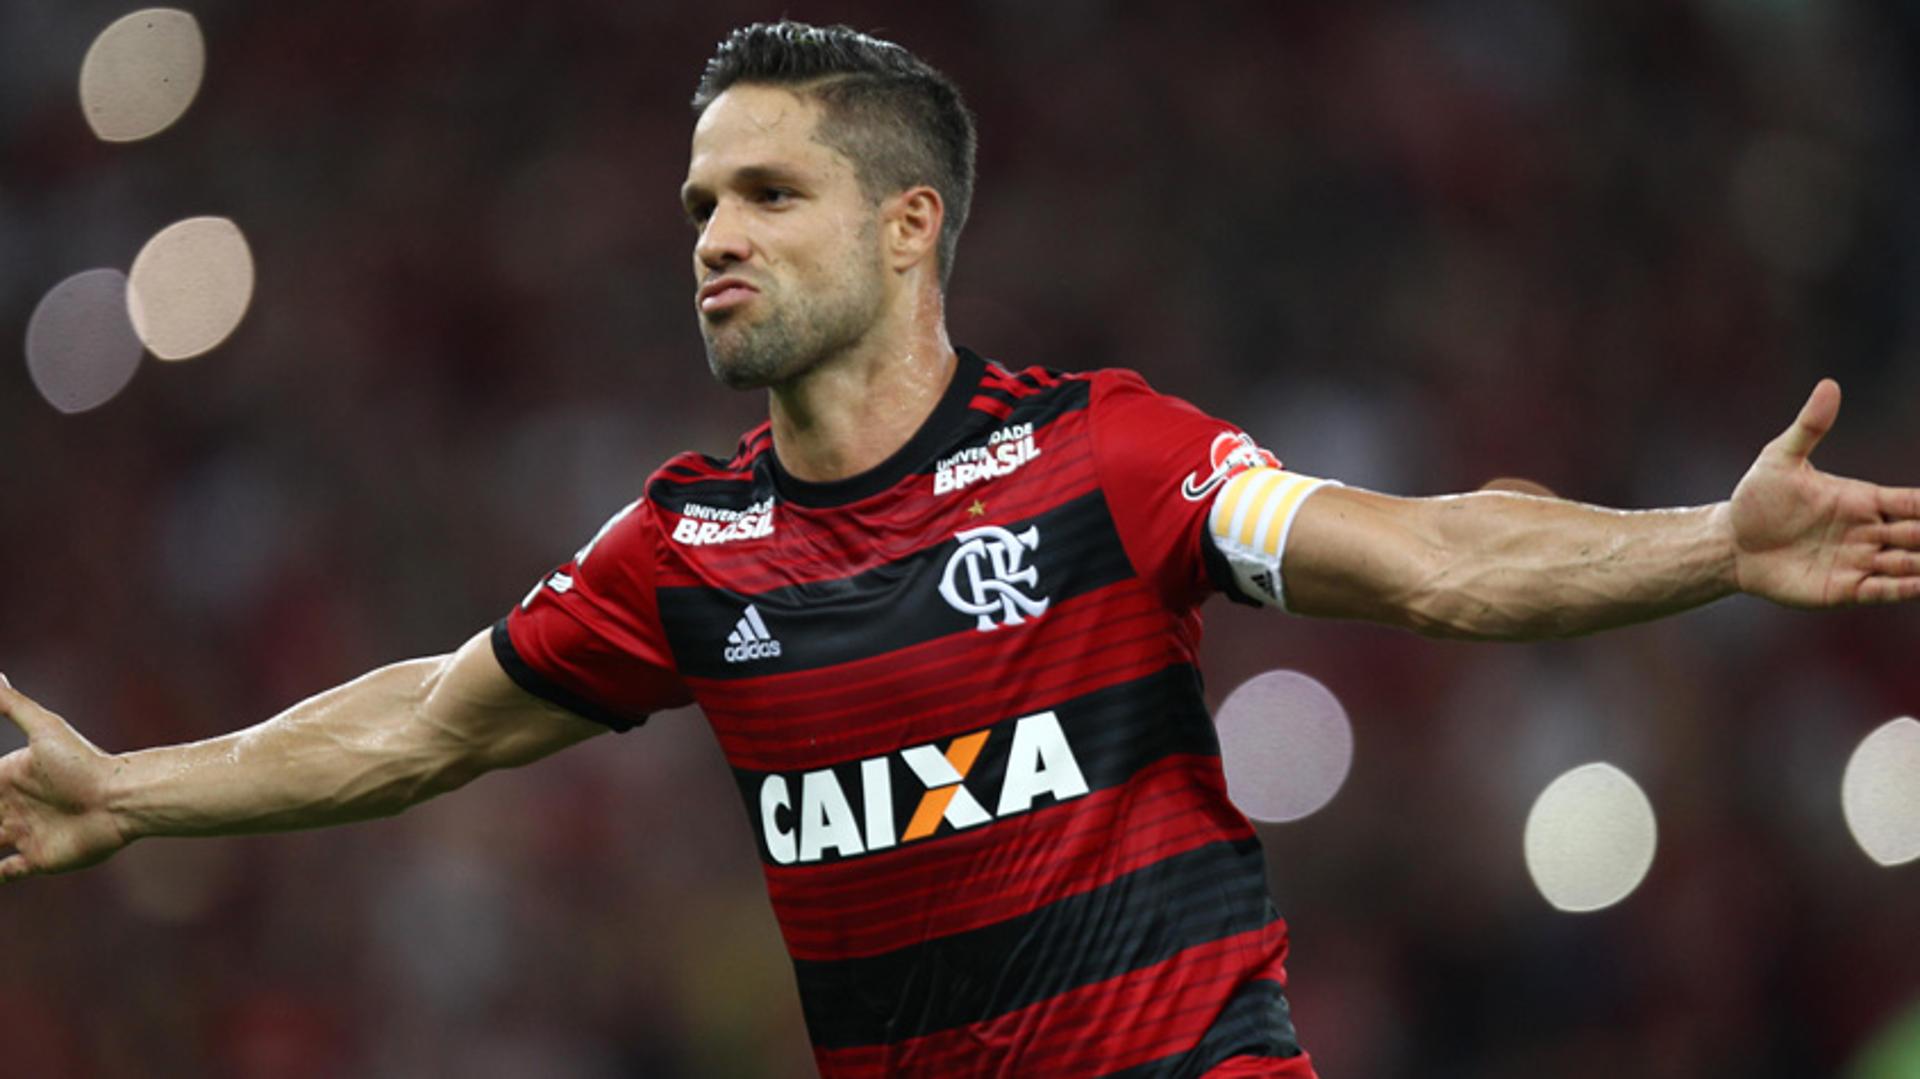 O Flamengo enfrenta o Palmeiras, pela 13ª rodada do Brasileirão, na Arena Palmeiras, nesta quarta-feira, às 21h&nbsp;